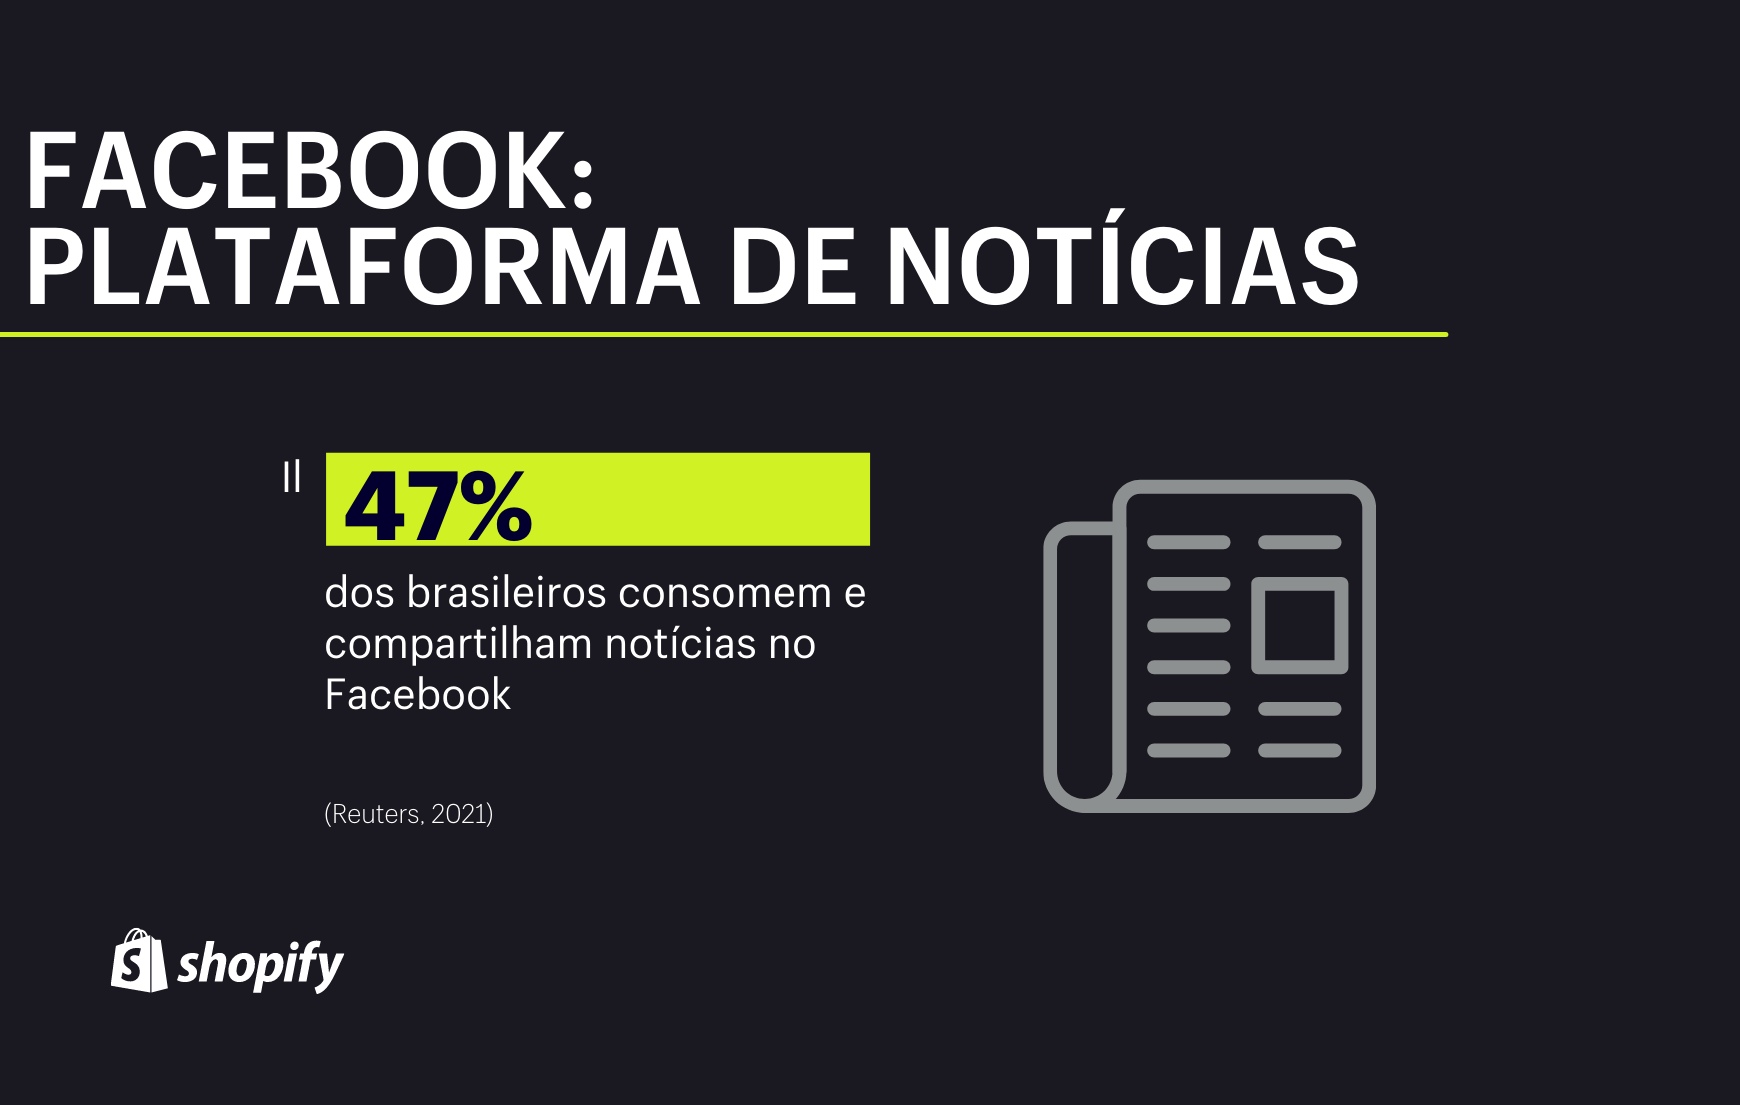 Infográfico com plano de fundo preto e texto e imagens de cor branca e detalhe verde, no qual há informação de que 47% dos brasileiros usam o Facebook como fonte de notícias